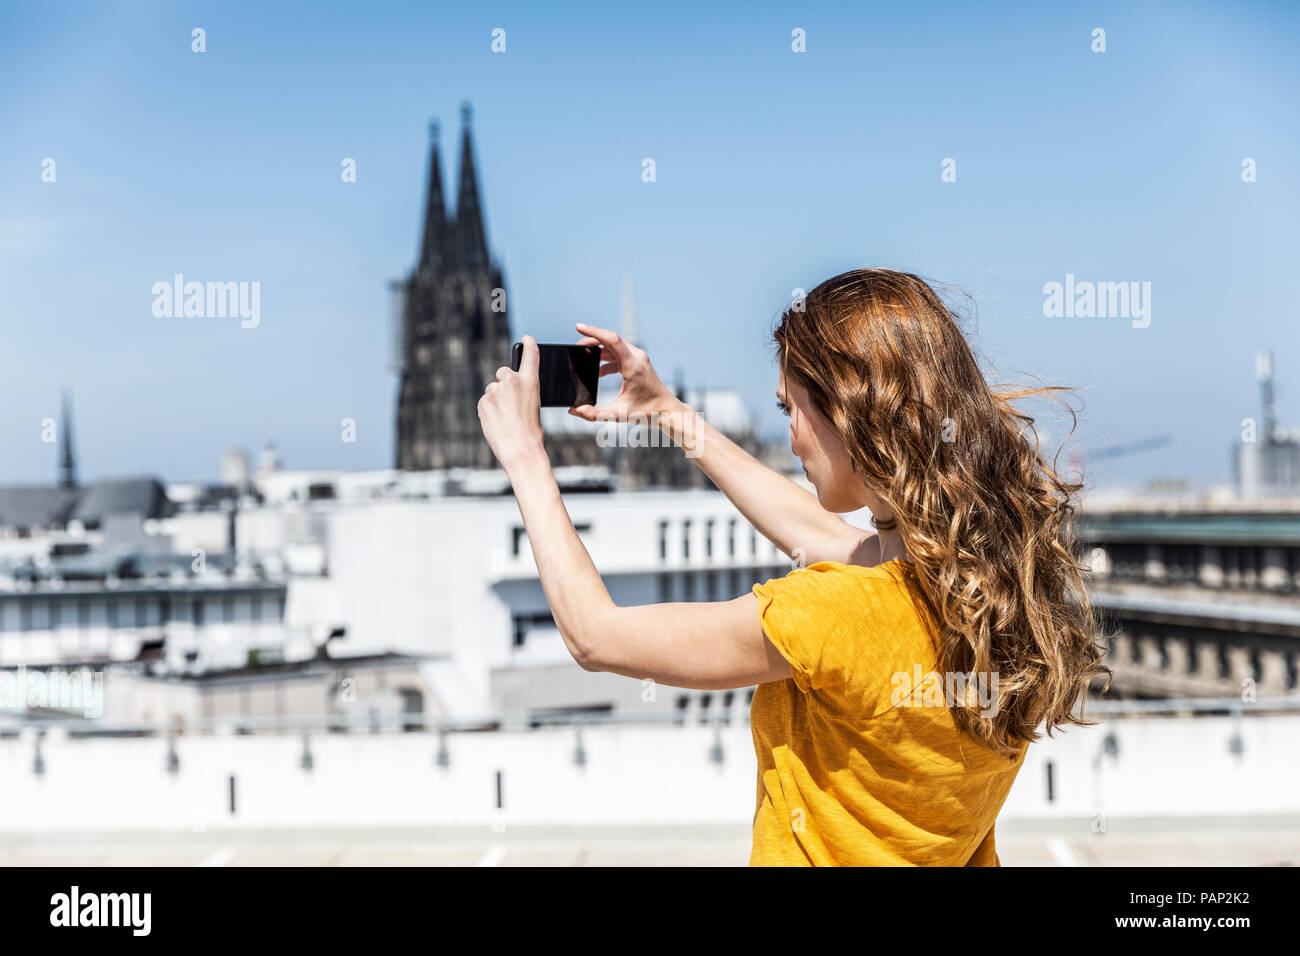 Allemagne, Cologne, woman taking photo avec toit-terrasse sur smartphone Banque D'Images